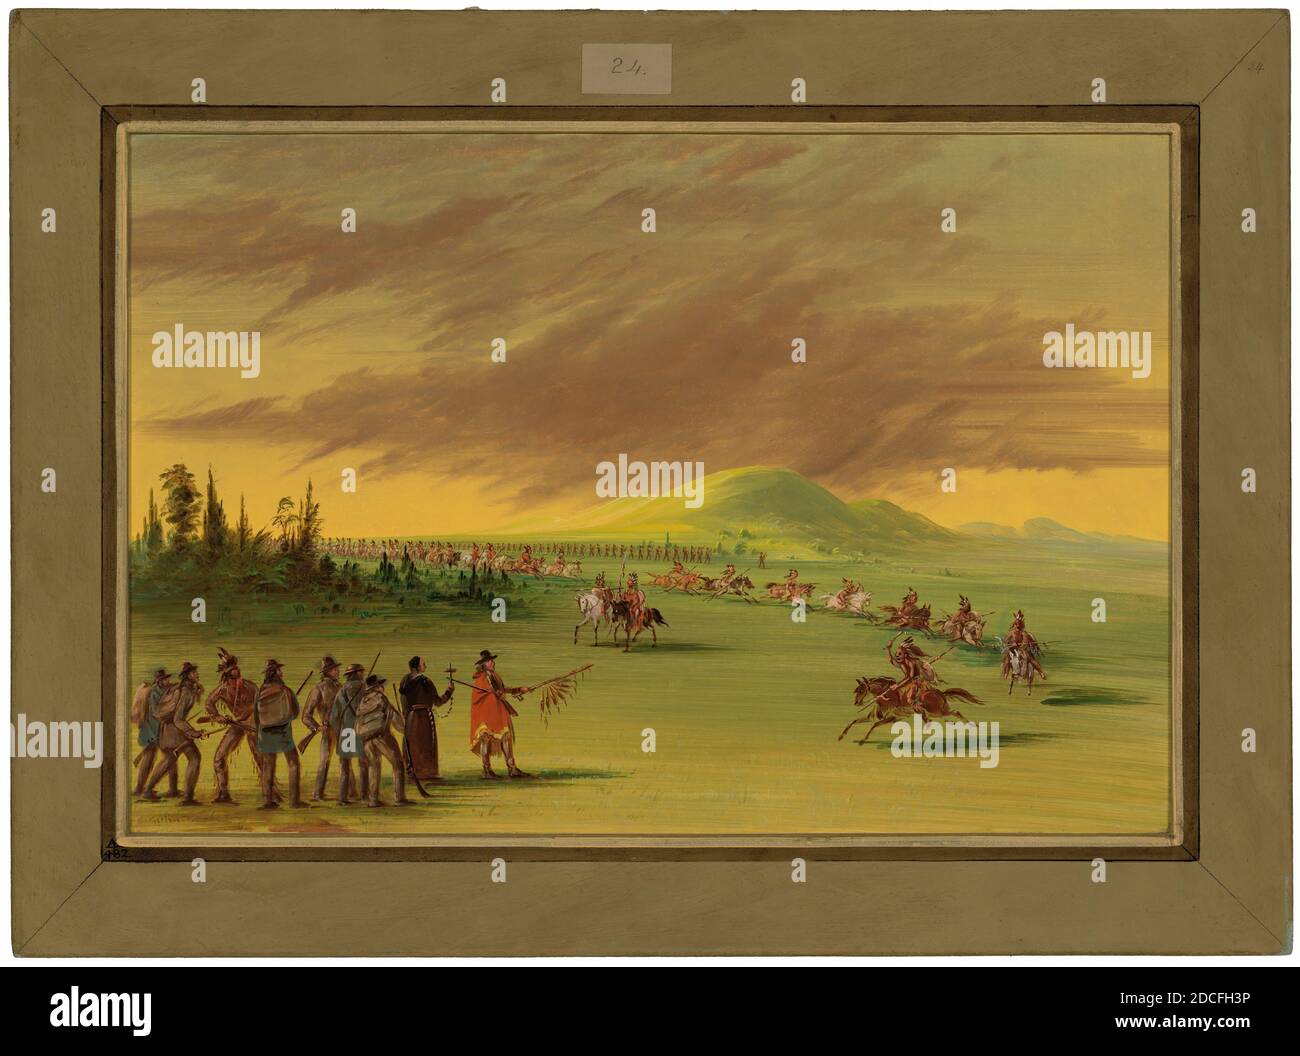 George Catlin, (artiste), américain, 1796 - 1872, la salle rencontre un parti de guerre des Indiens Cenis dans une prairie du Texas. 25 avril 1686, 1847/1848, huile sur toile, total : 37.8 x 56.5 cm (14 7/8 x 22 1/4 po Banque D'Images